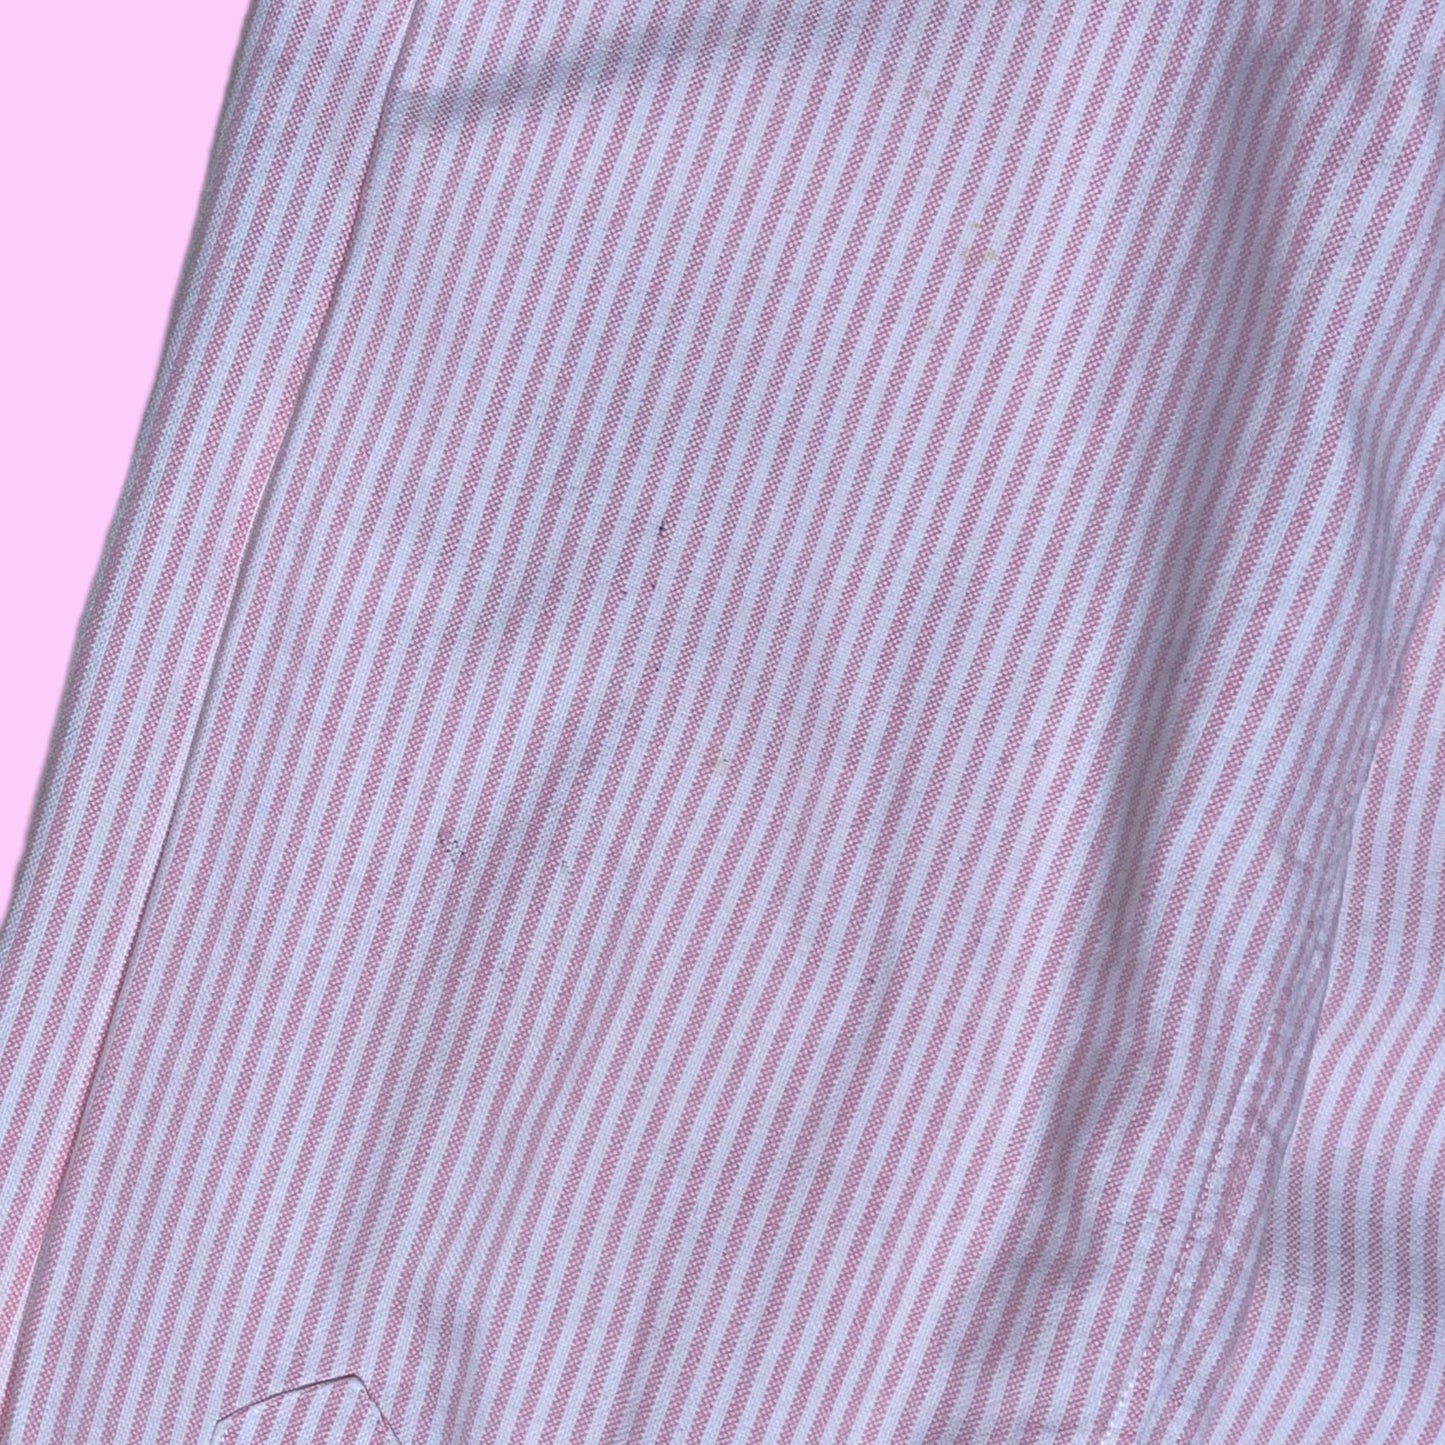 Striped Ralph Lauren shirt - M